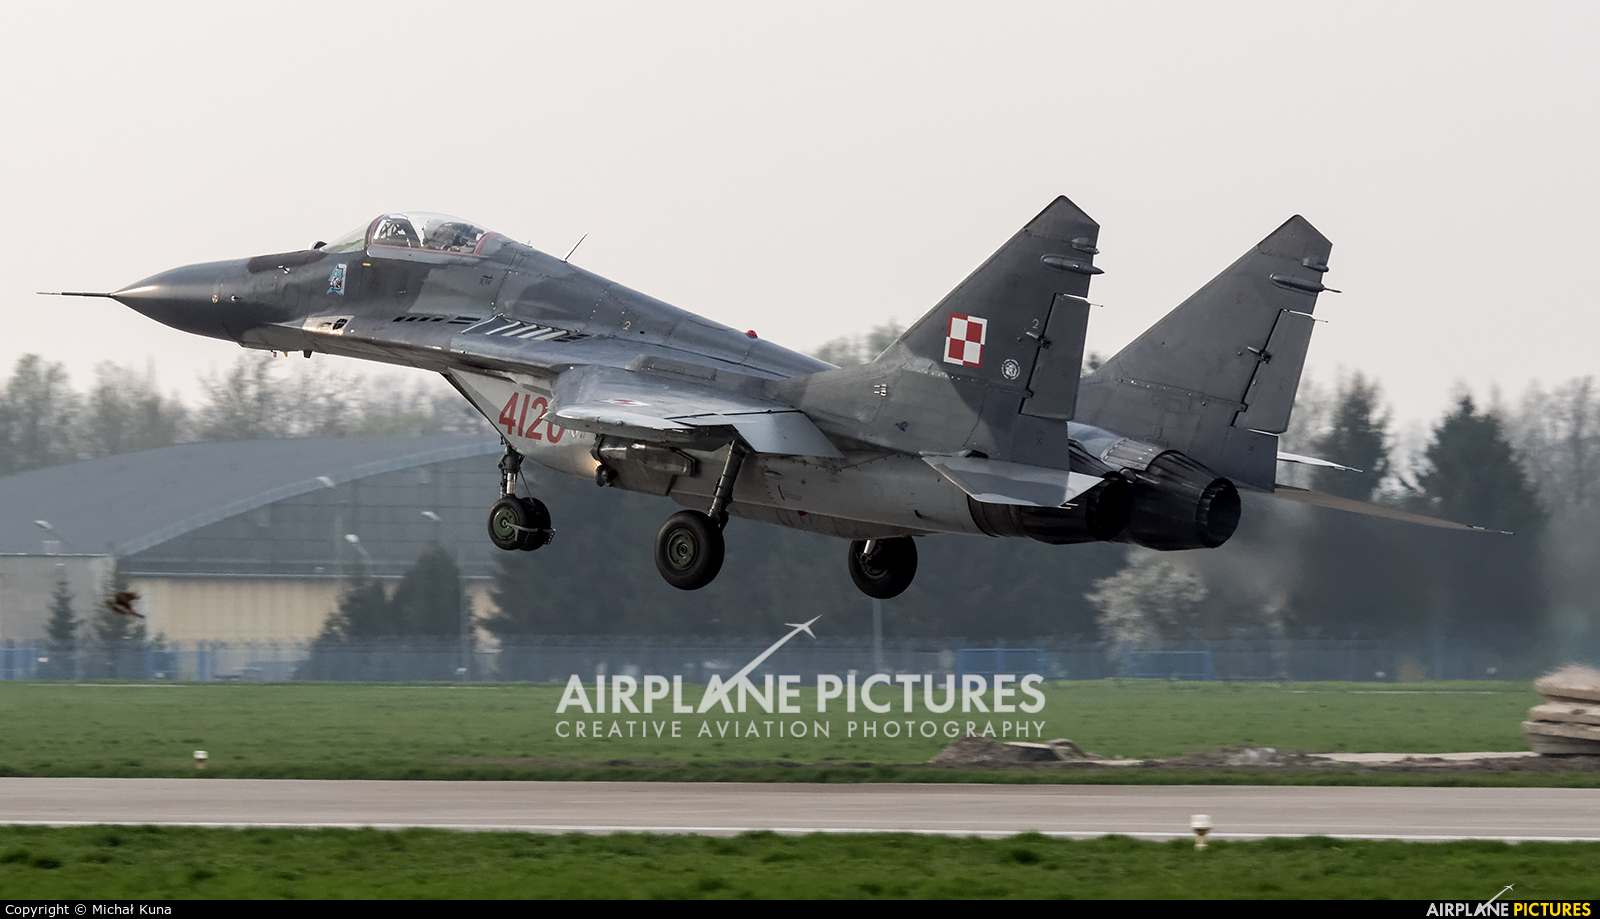 Poland - Air Force 4120 aircraft at Malbork